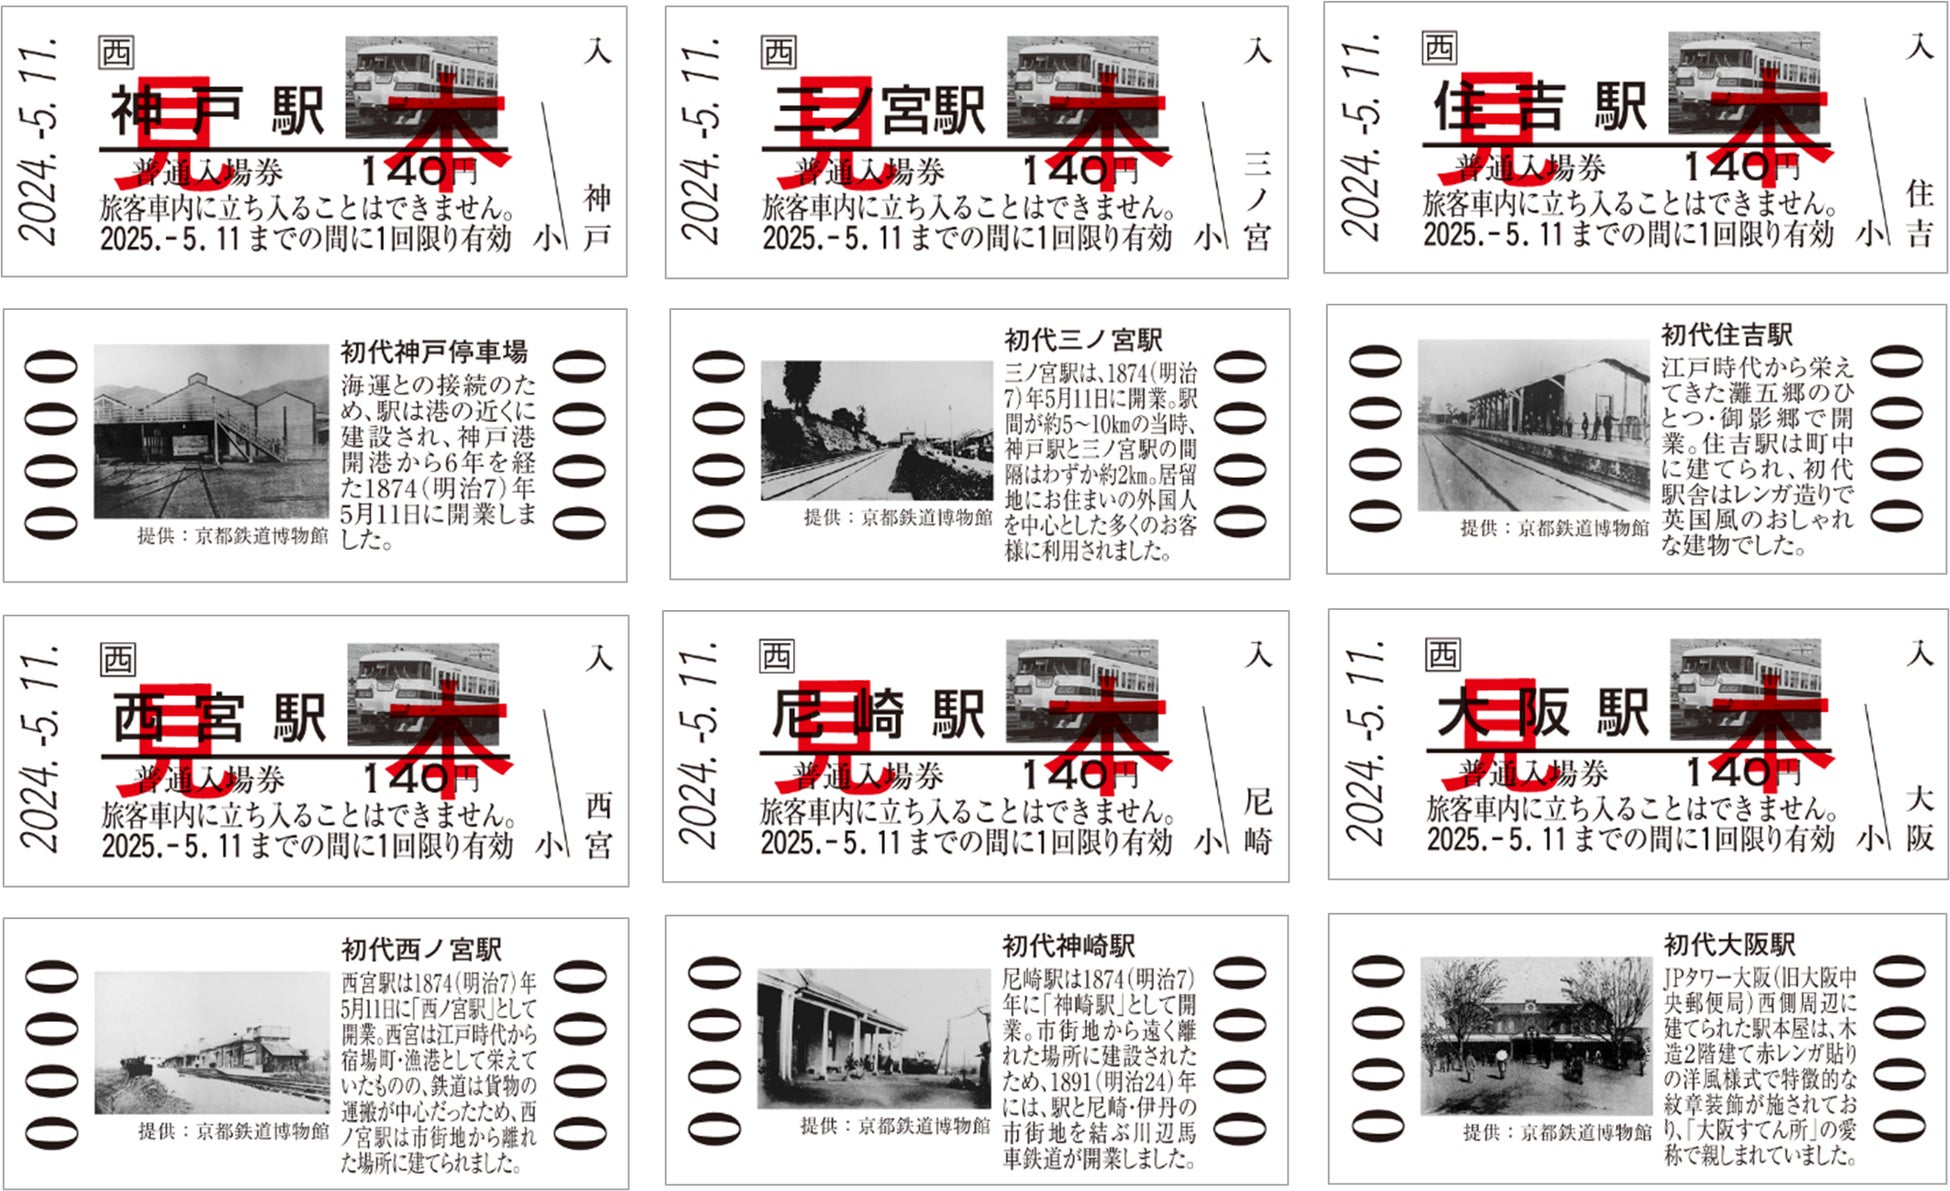 神戸～大阪鉄道開業150周年 記念入場券の発売